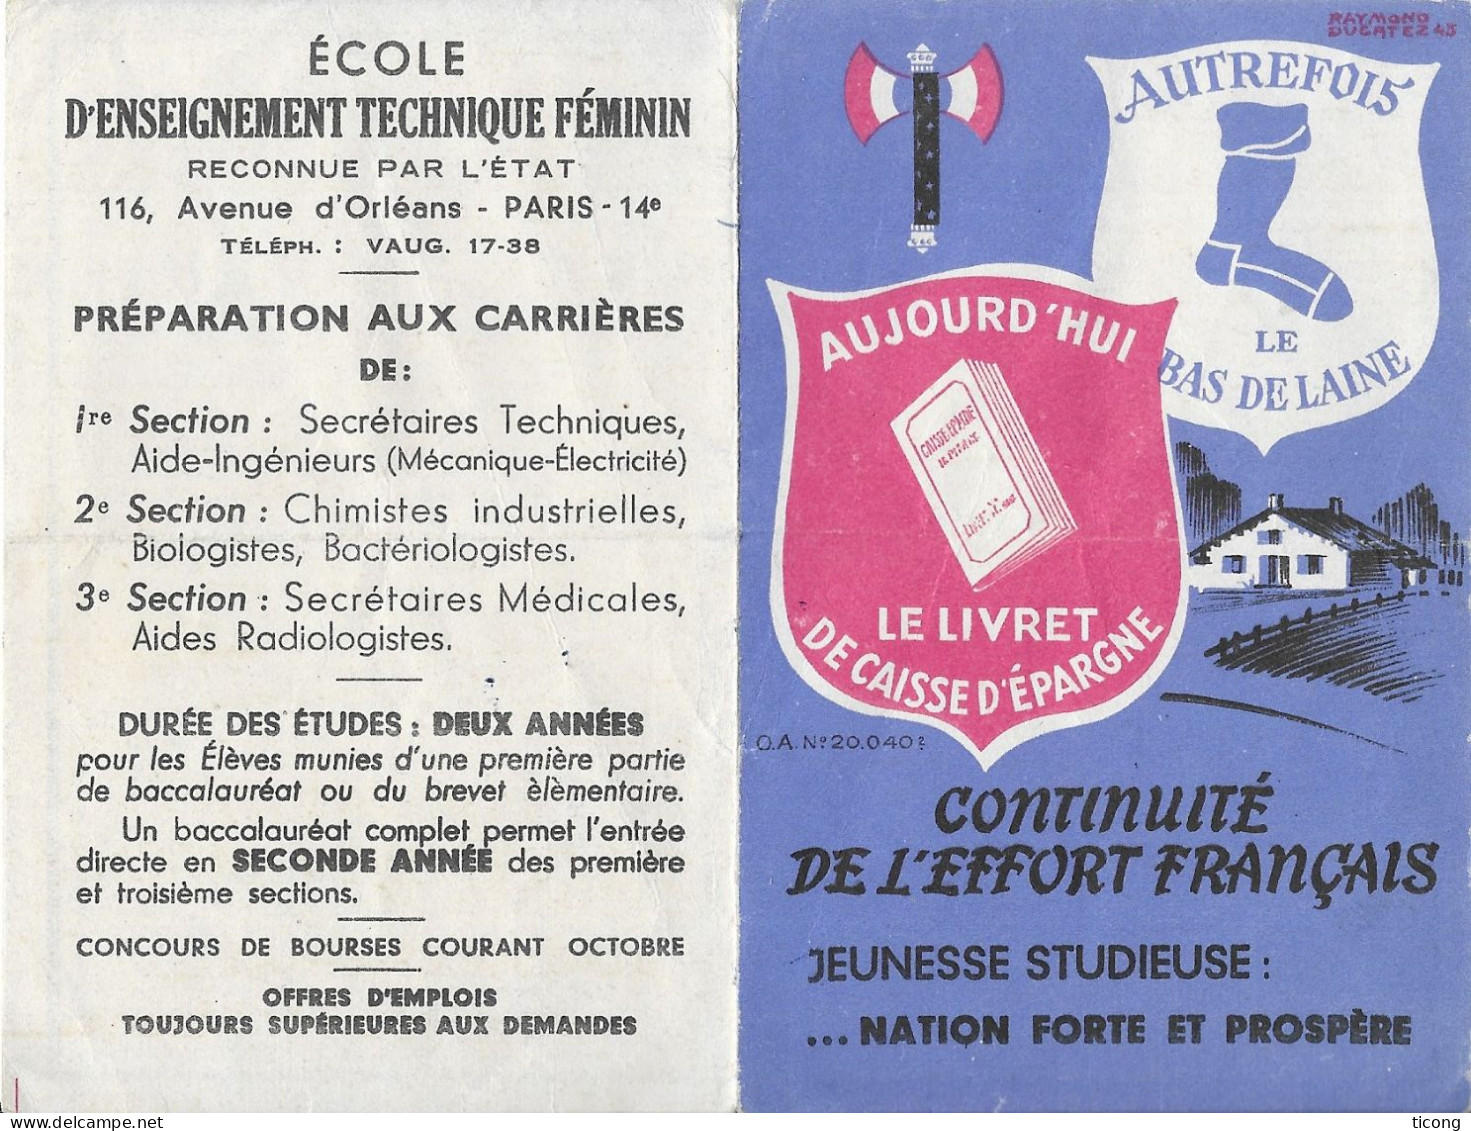 CALENDRIER 1944 - CONTINUITE DE L EFFORT FRANCAIS JEUNESSE STUDIEUSE NATION FORTE ET PROSPERE, SIGNEE RAYMOND DUCATEZ - Small : 1941-60